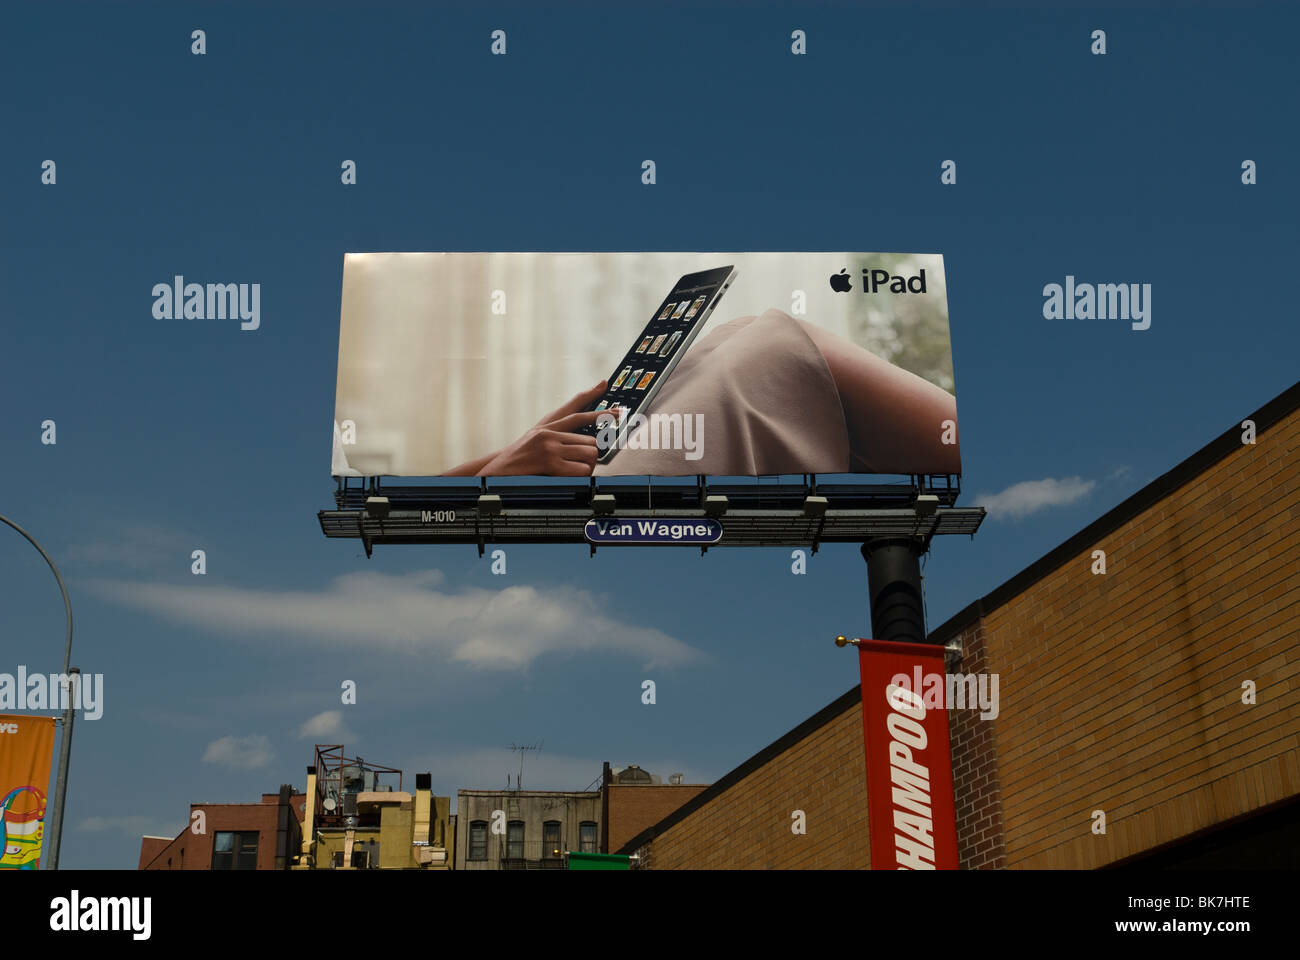 Werbung für das iPad von Apple Inc. auf einer Plakatwand im Stadtteil Soho von New York Stockfoto